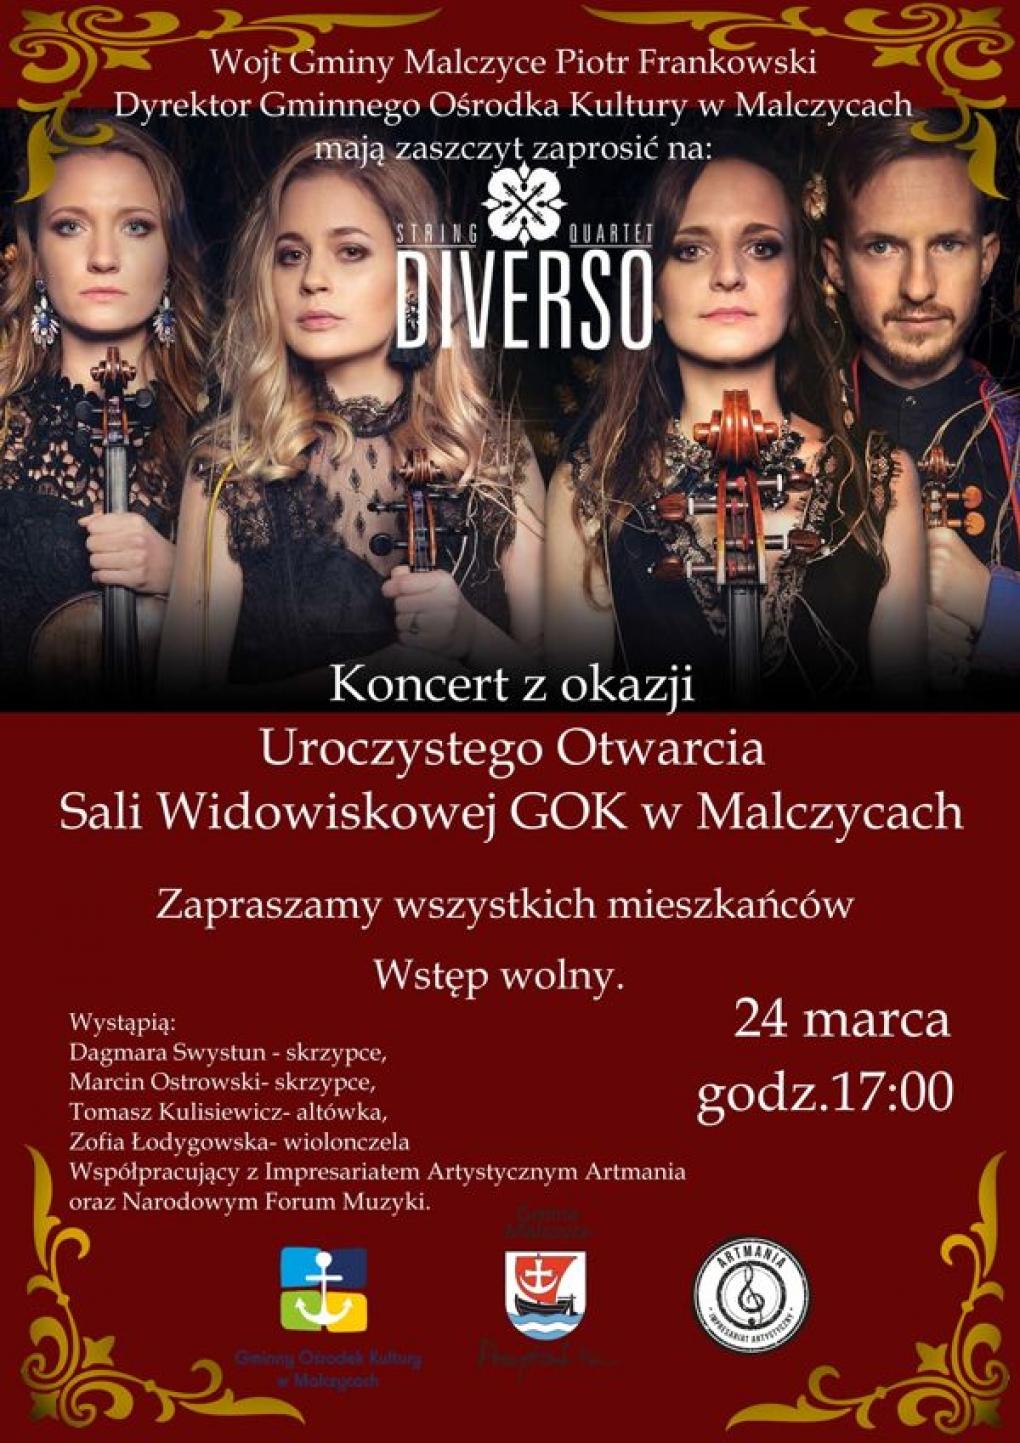 Koncert z okazji otwarcia GOK w Malczycach